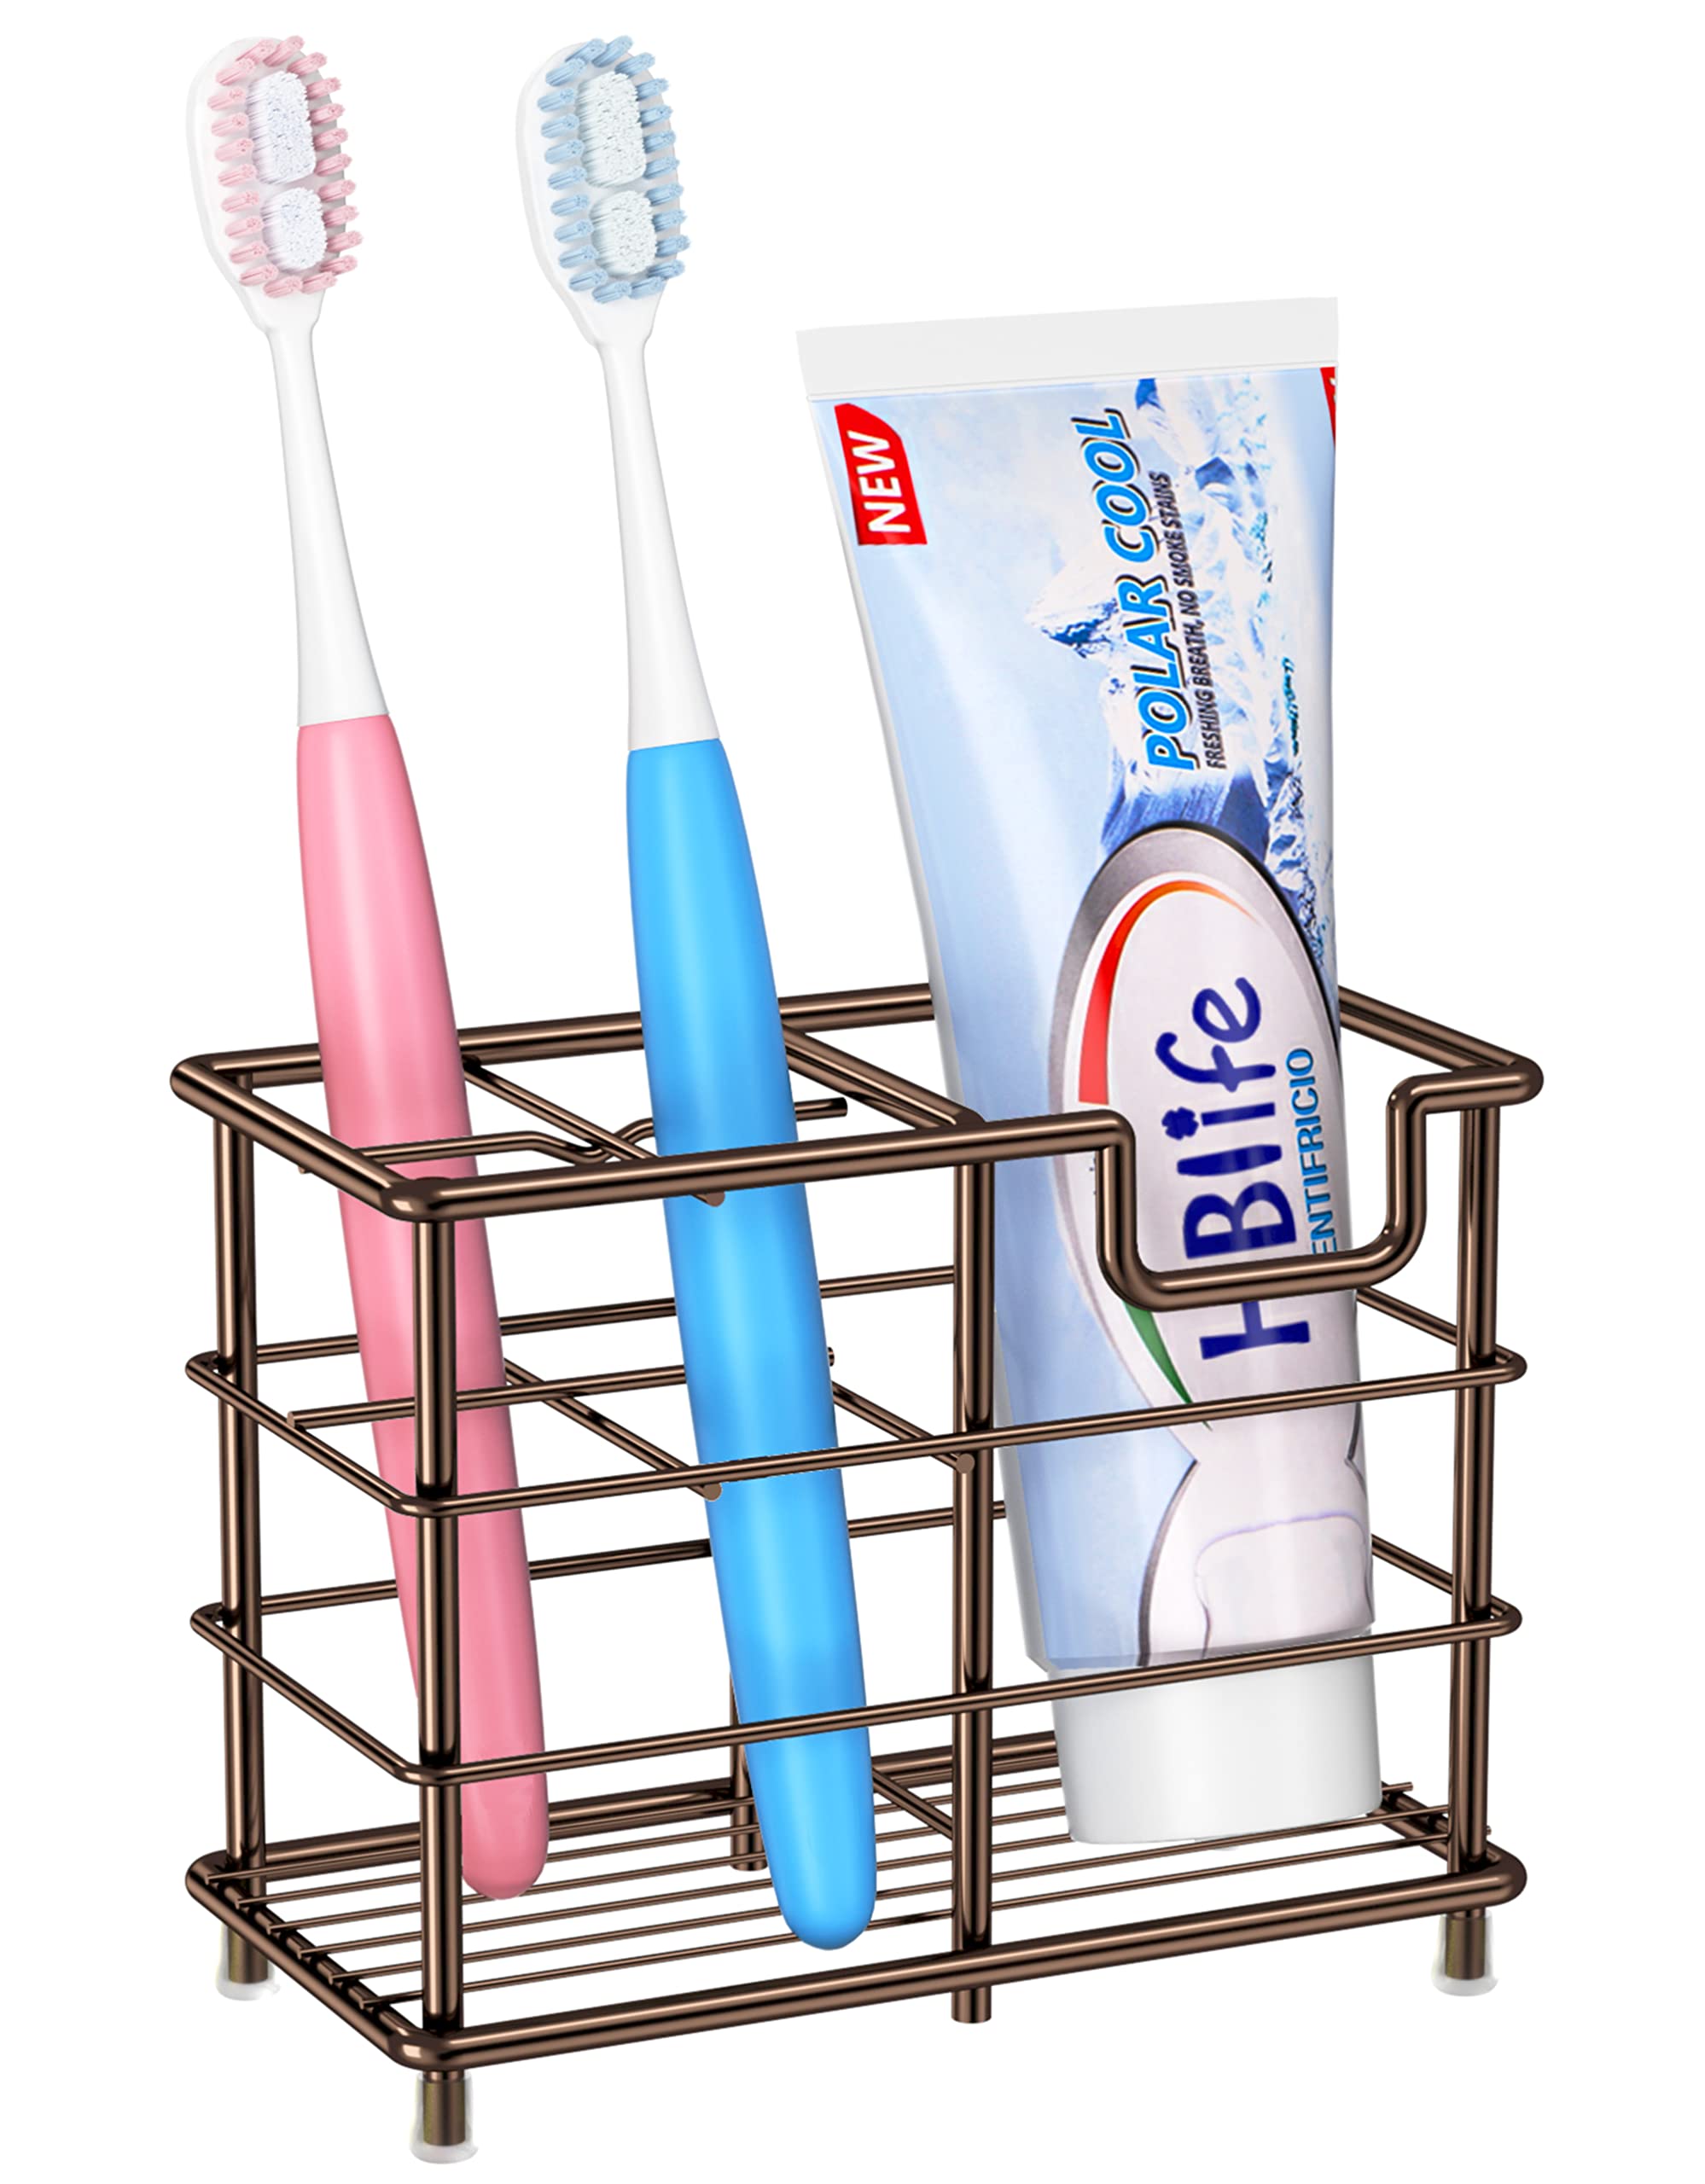 best toothbrush holder